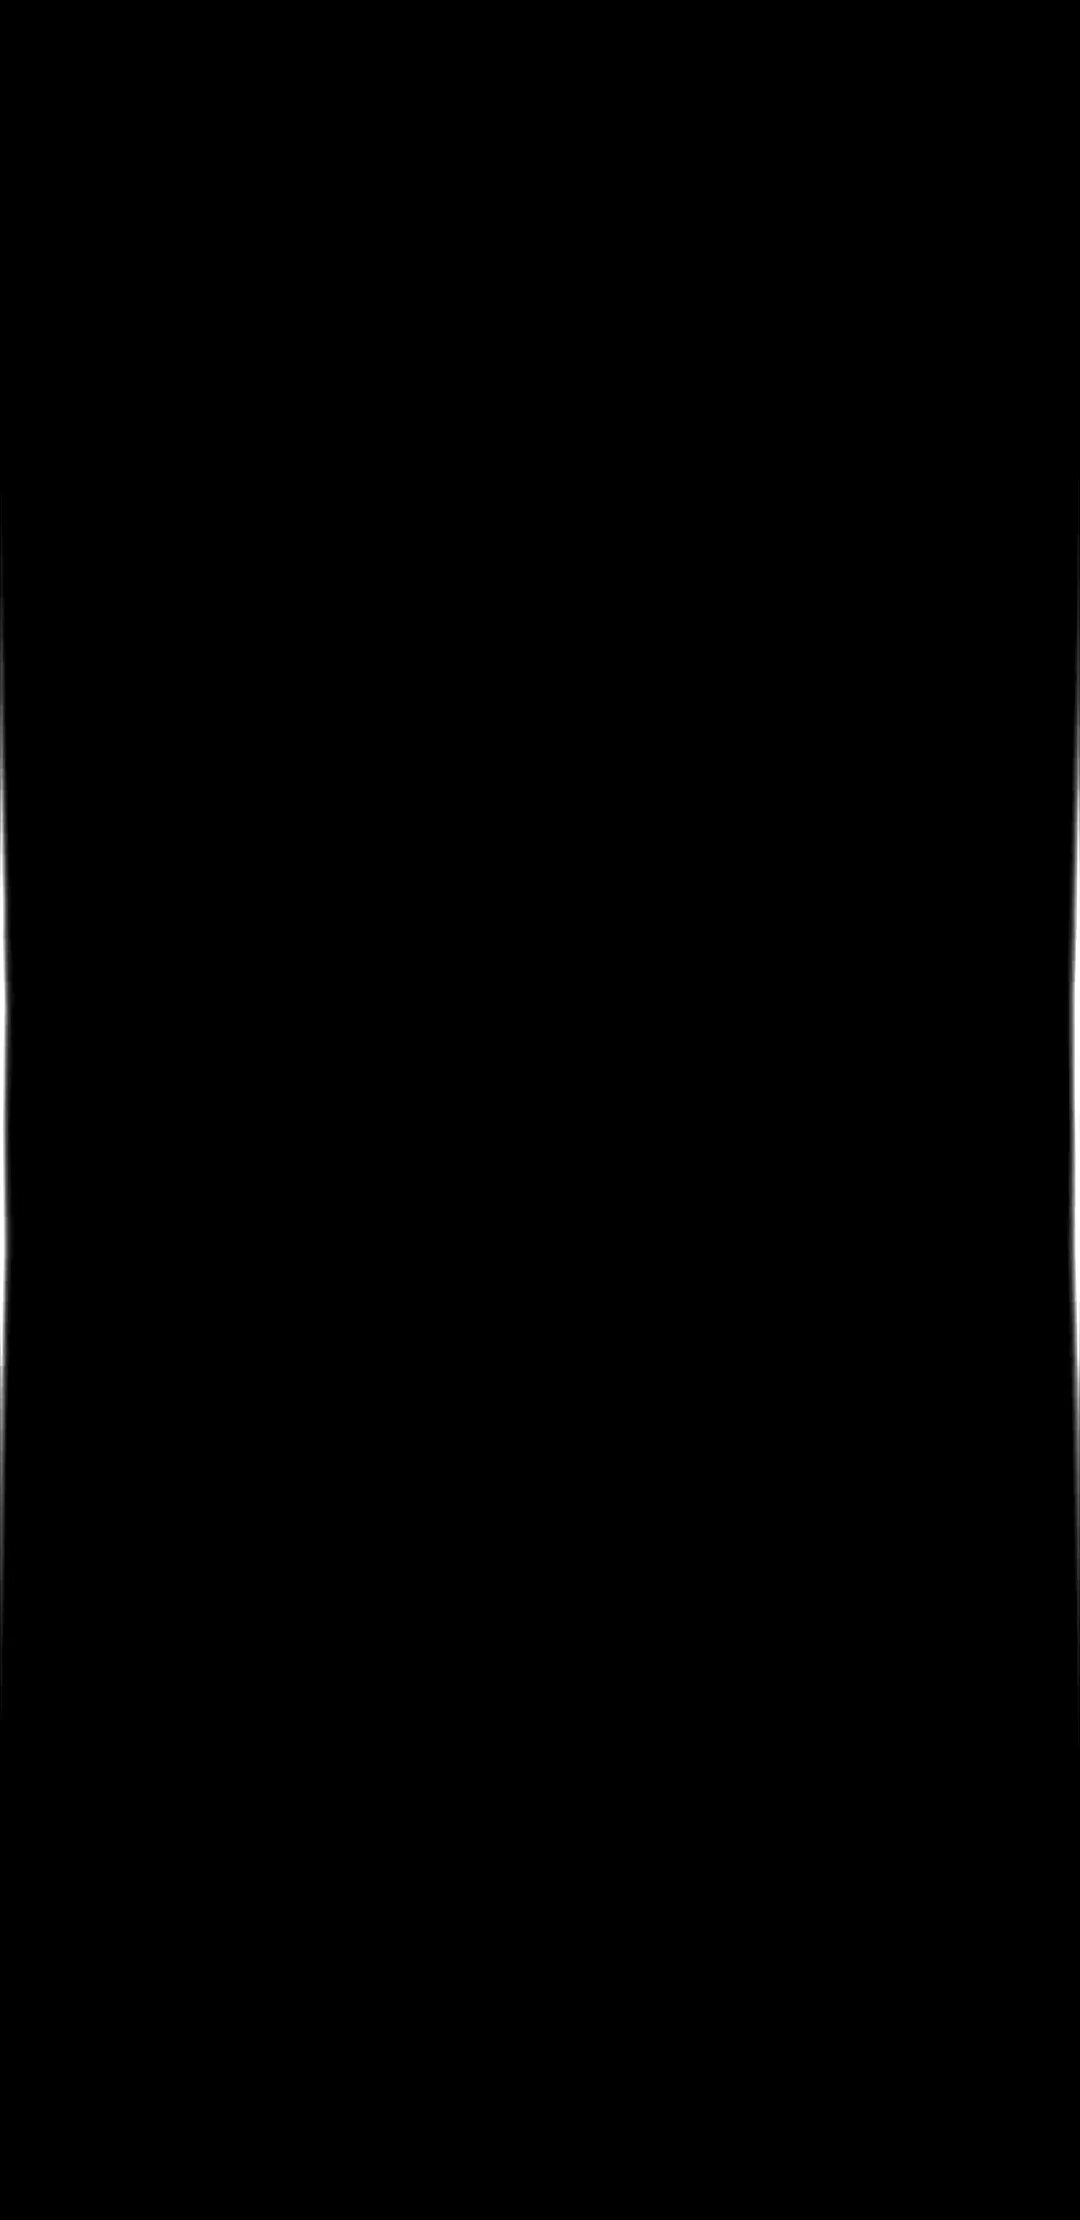 Тема черный экран. Черный экран для амолед дисплеев. Черный фон вертикальный. Чёрный фон без ничего вертикальный. Сплошной черный.